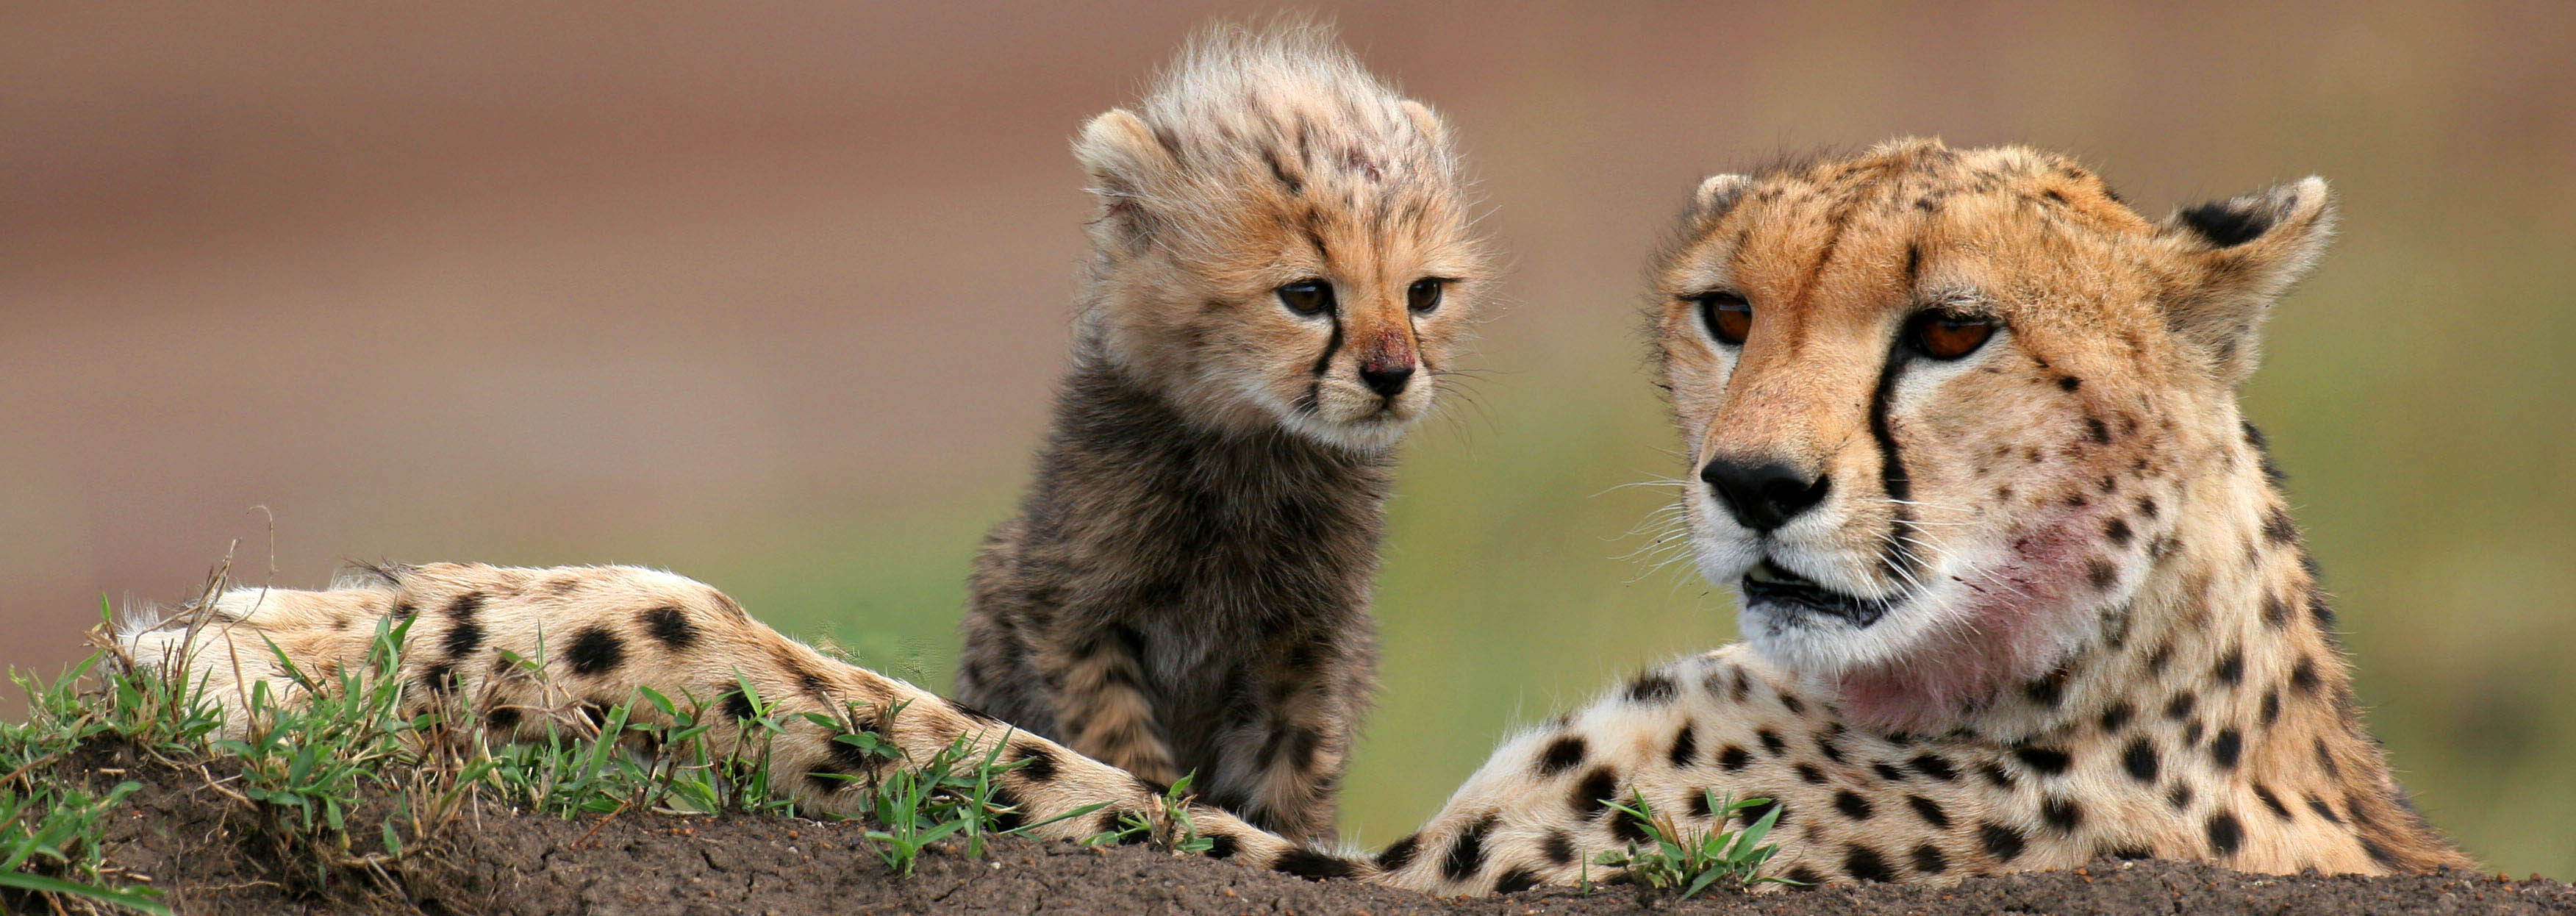 Cheetah and cub, Masai Mara